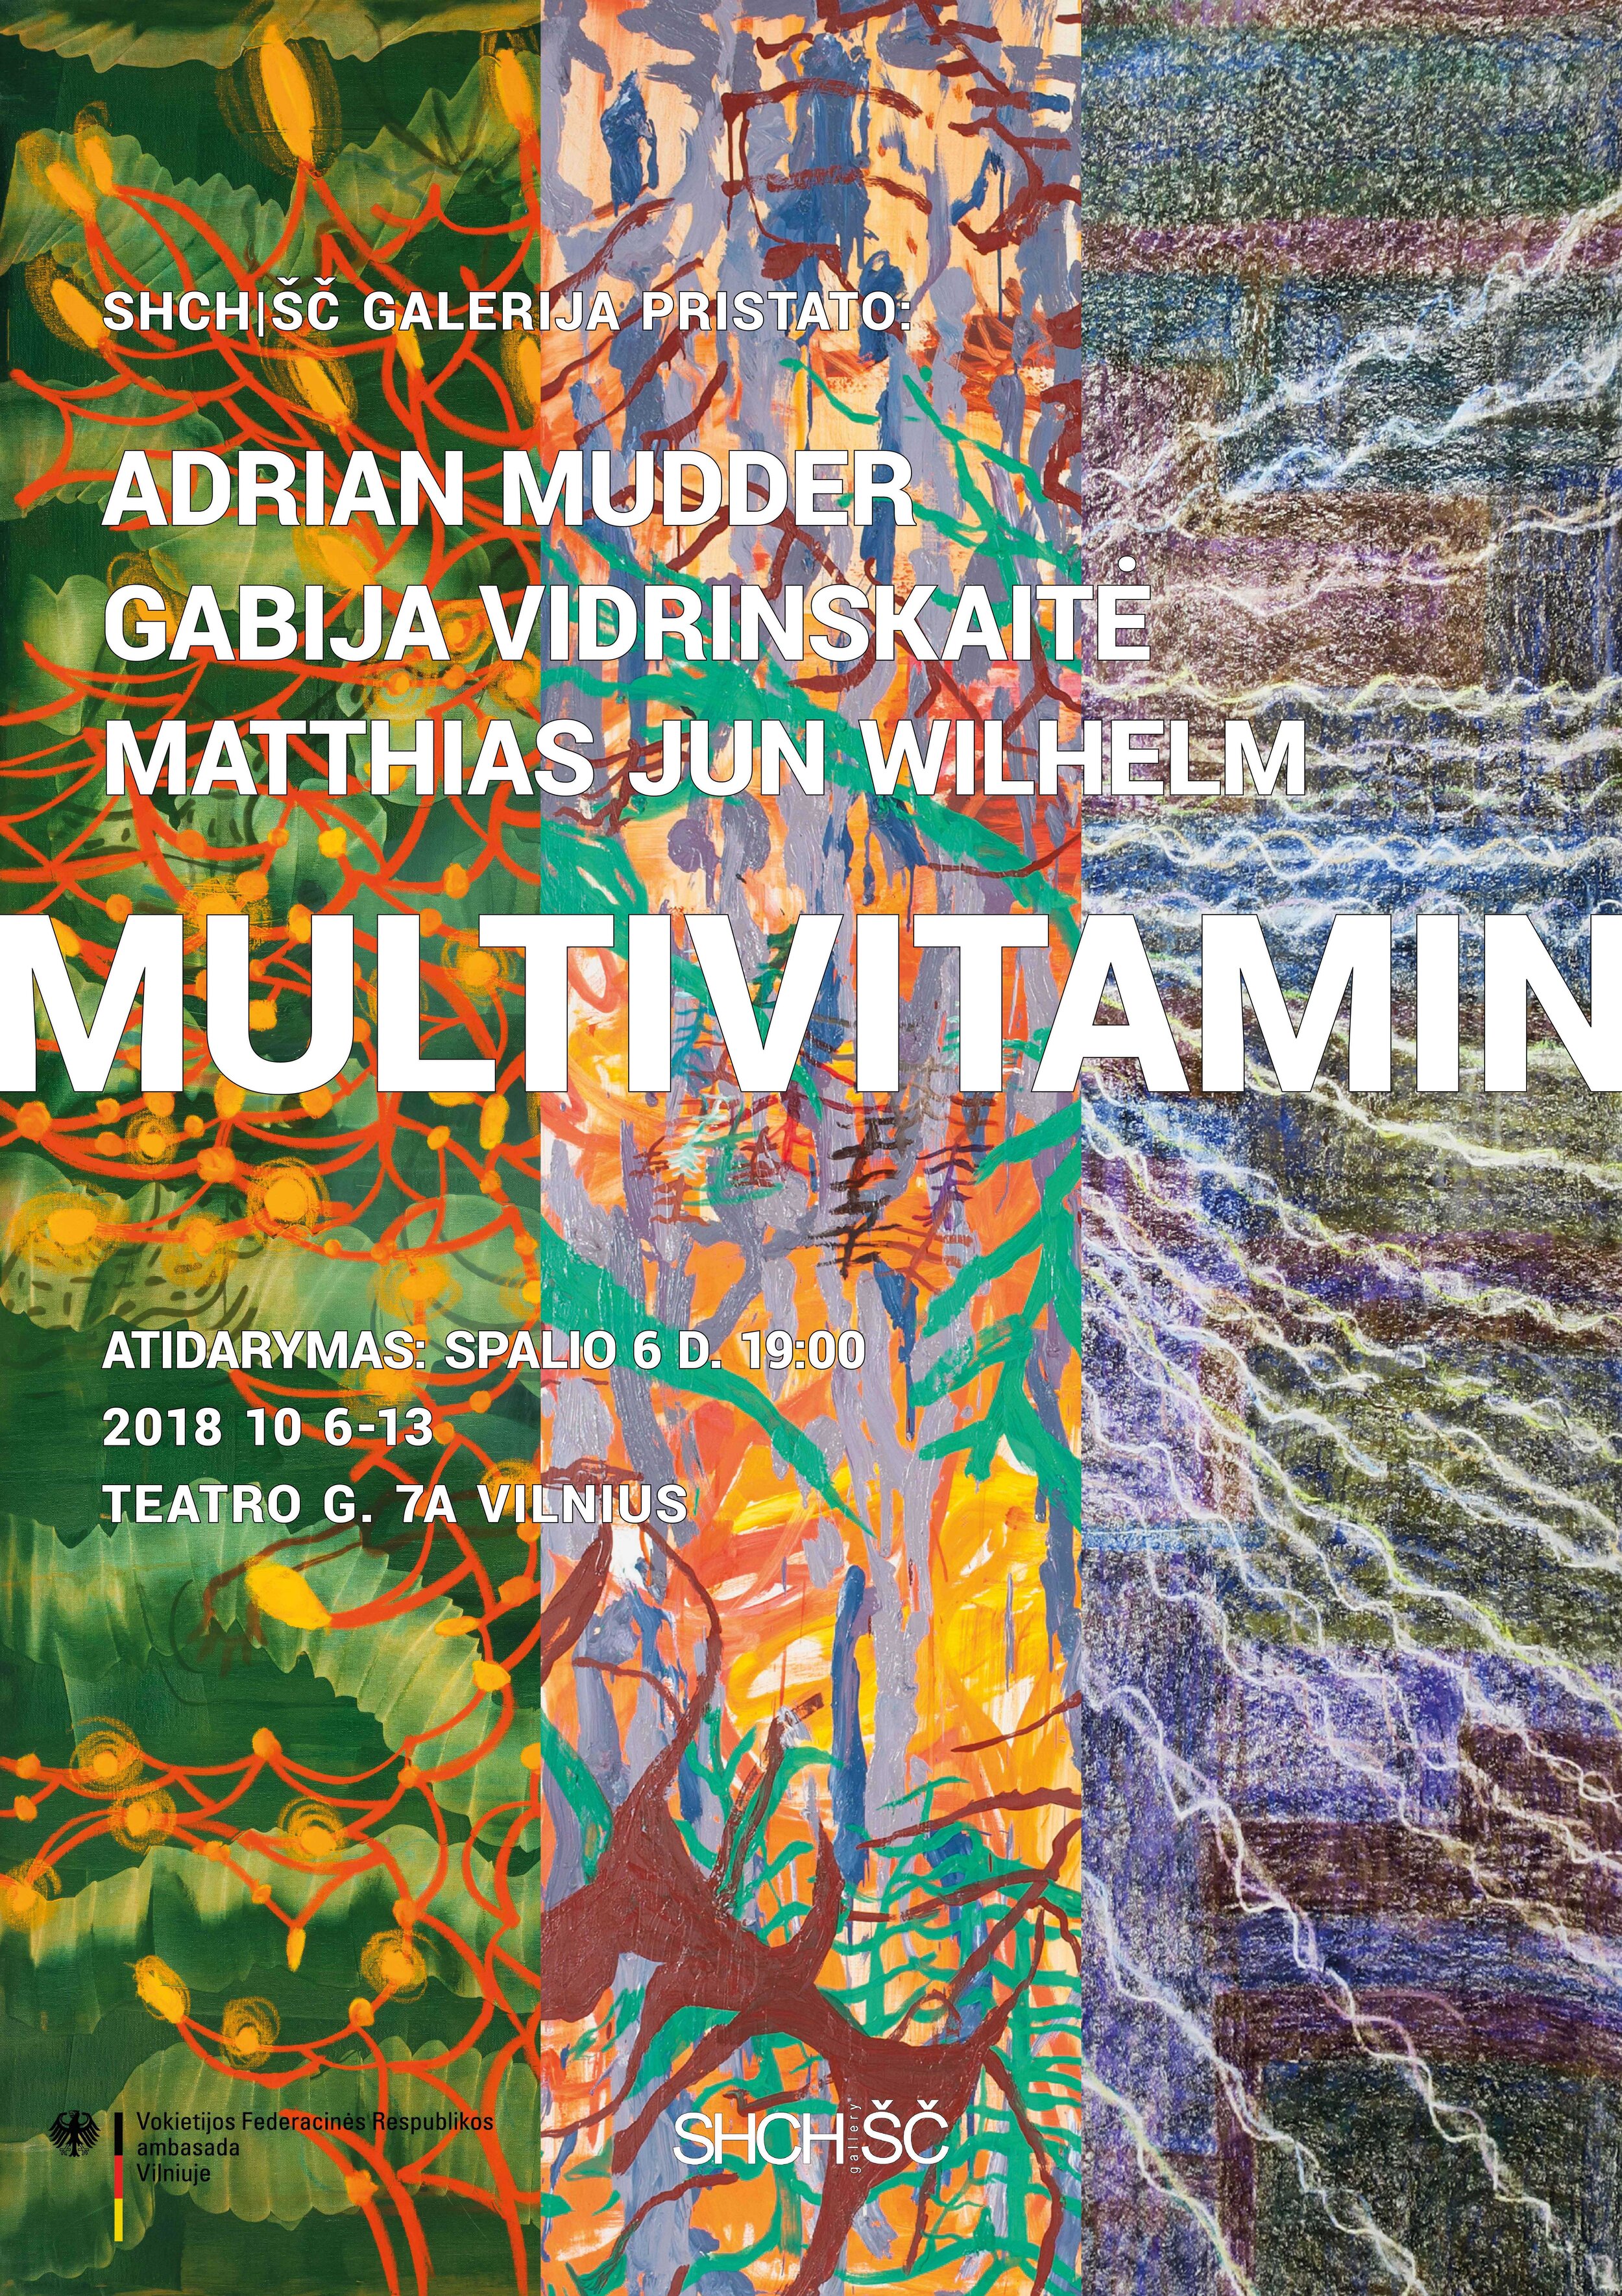  MULTIVITAMIN  SHCH/ŠČ gallery, Vilnius, LT  06.-13.10.2018  Gabija Vidrinskaitė /  Adrian Mudder  /  Matthias Jun Wilhelm    